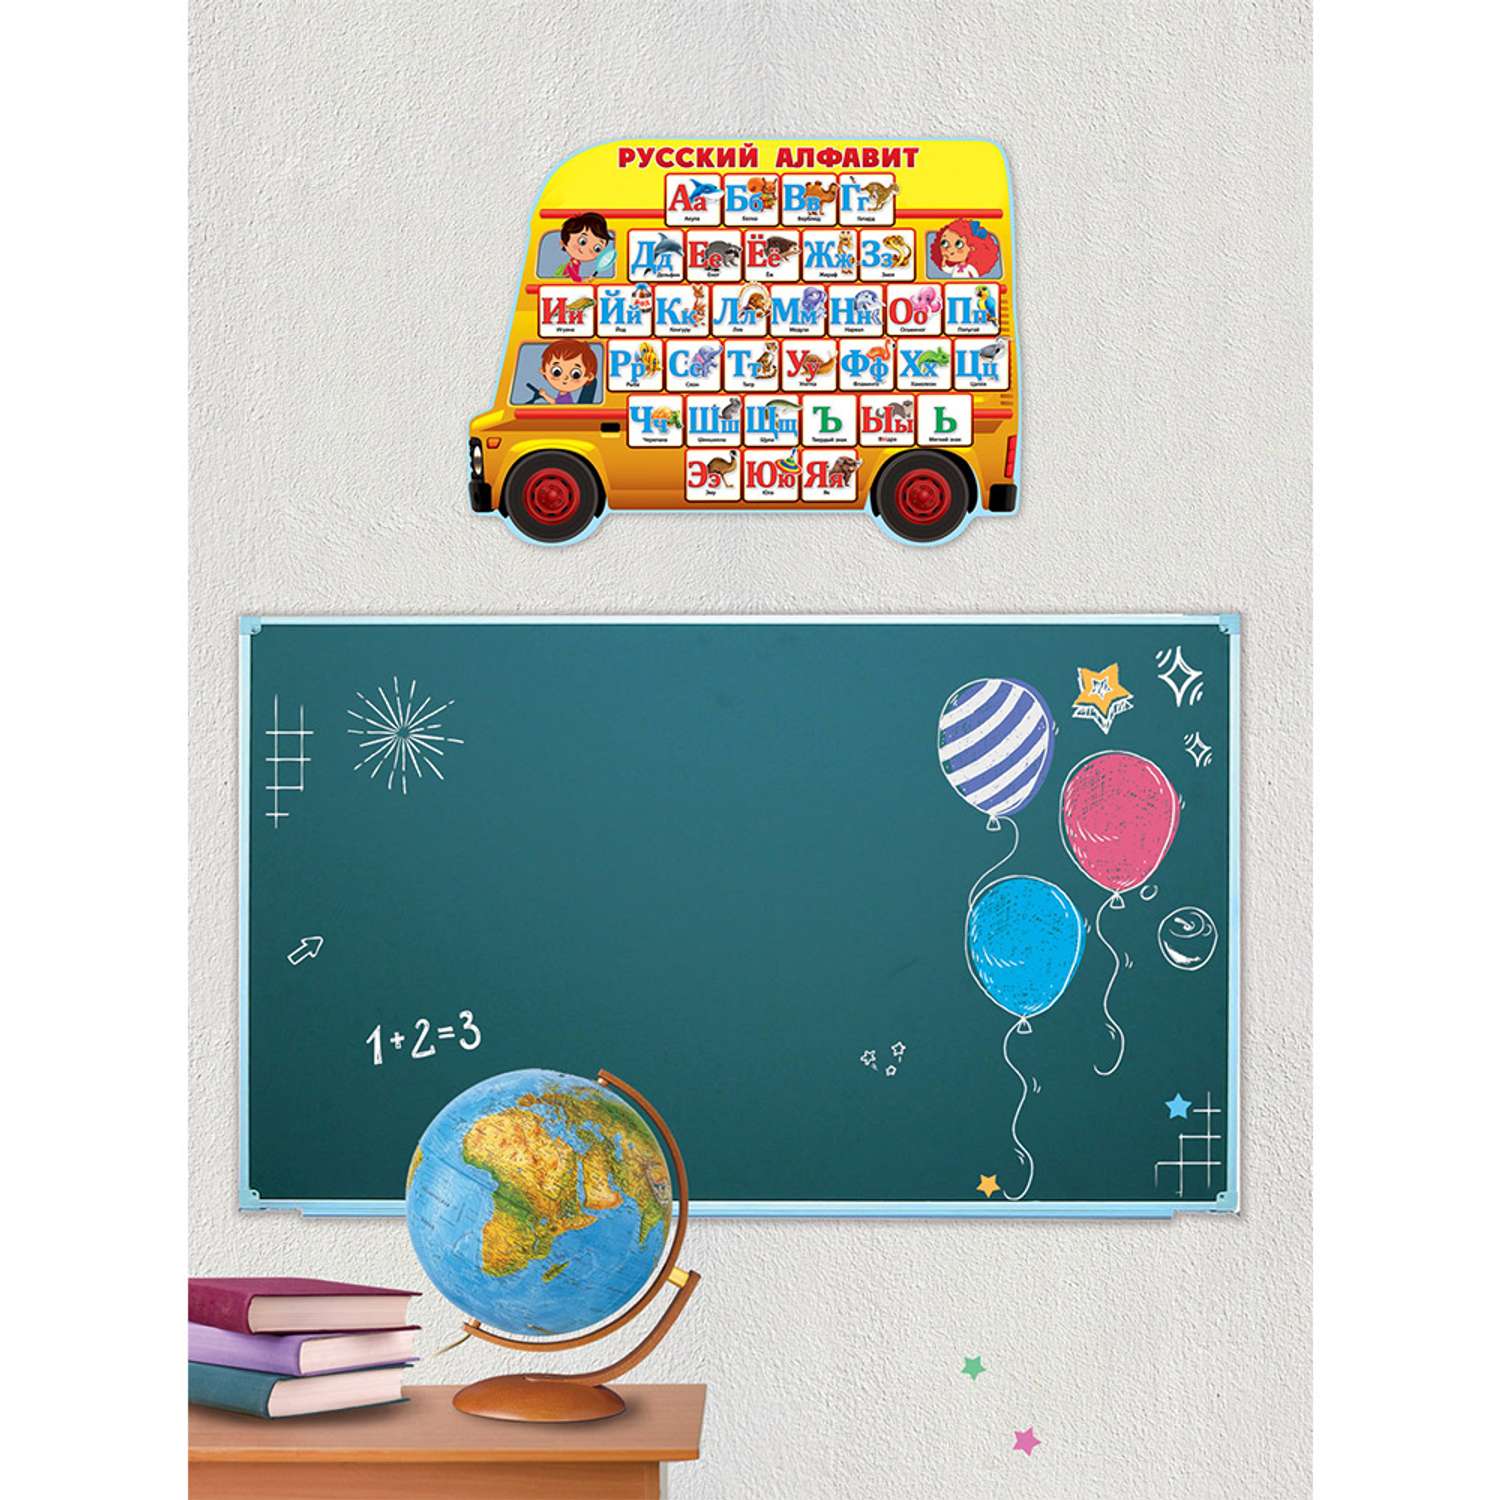 Обучающий плакат на стену Праздник русский алфавит с картинками детям в школу - фото 3